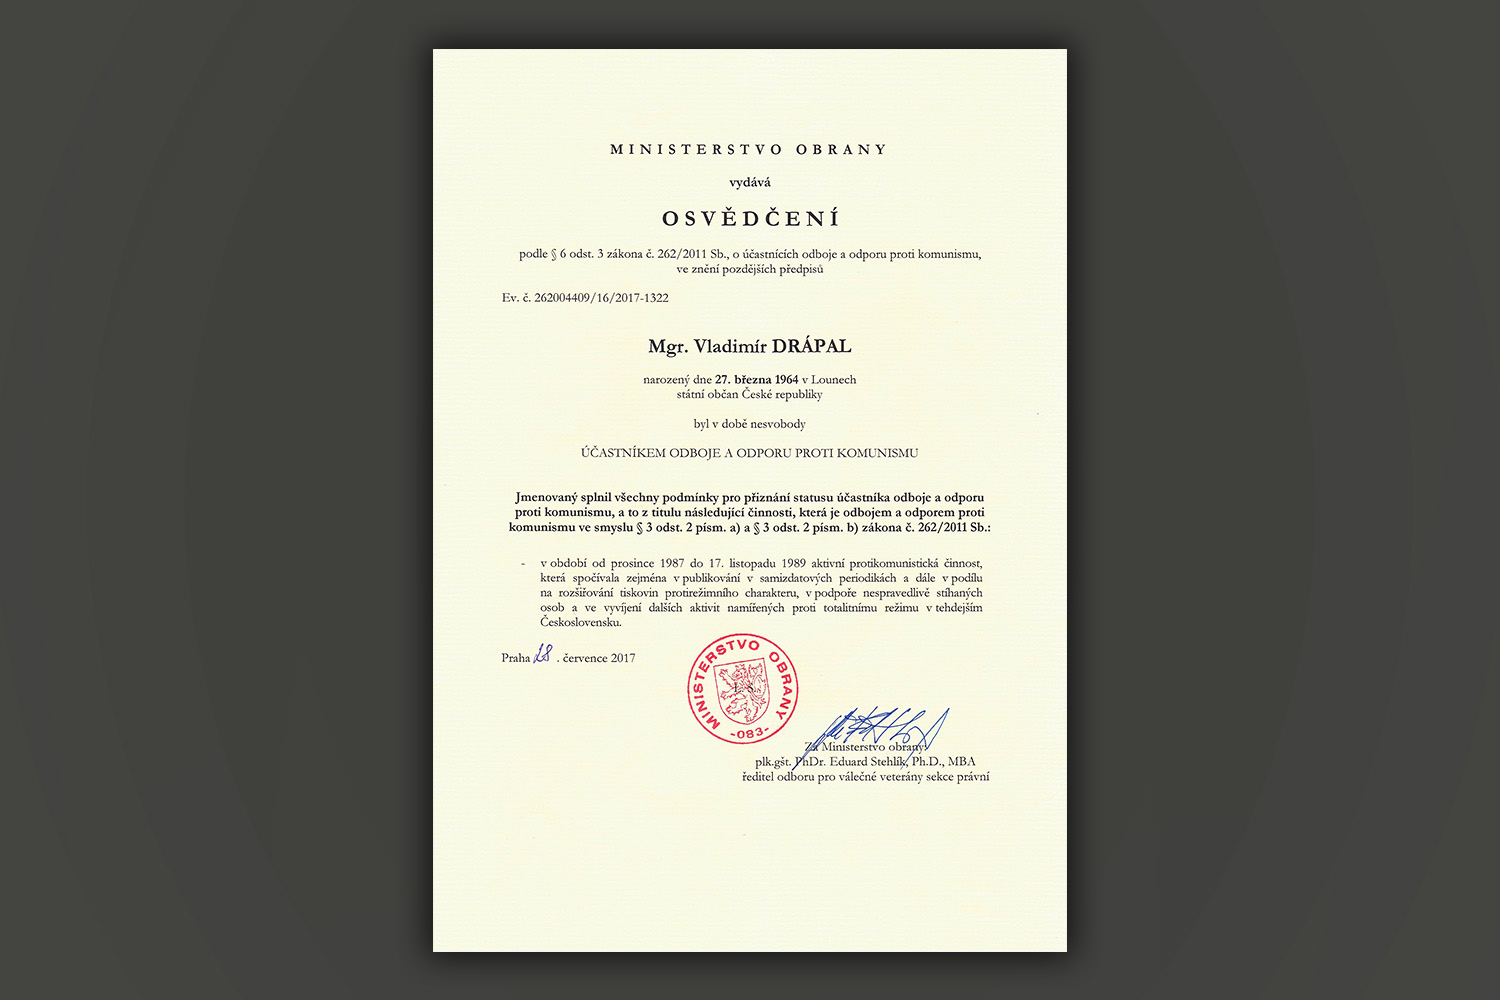 Diplom za účast v odboji a odporu vůči komunismu